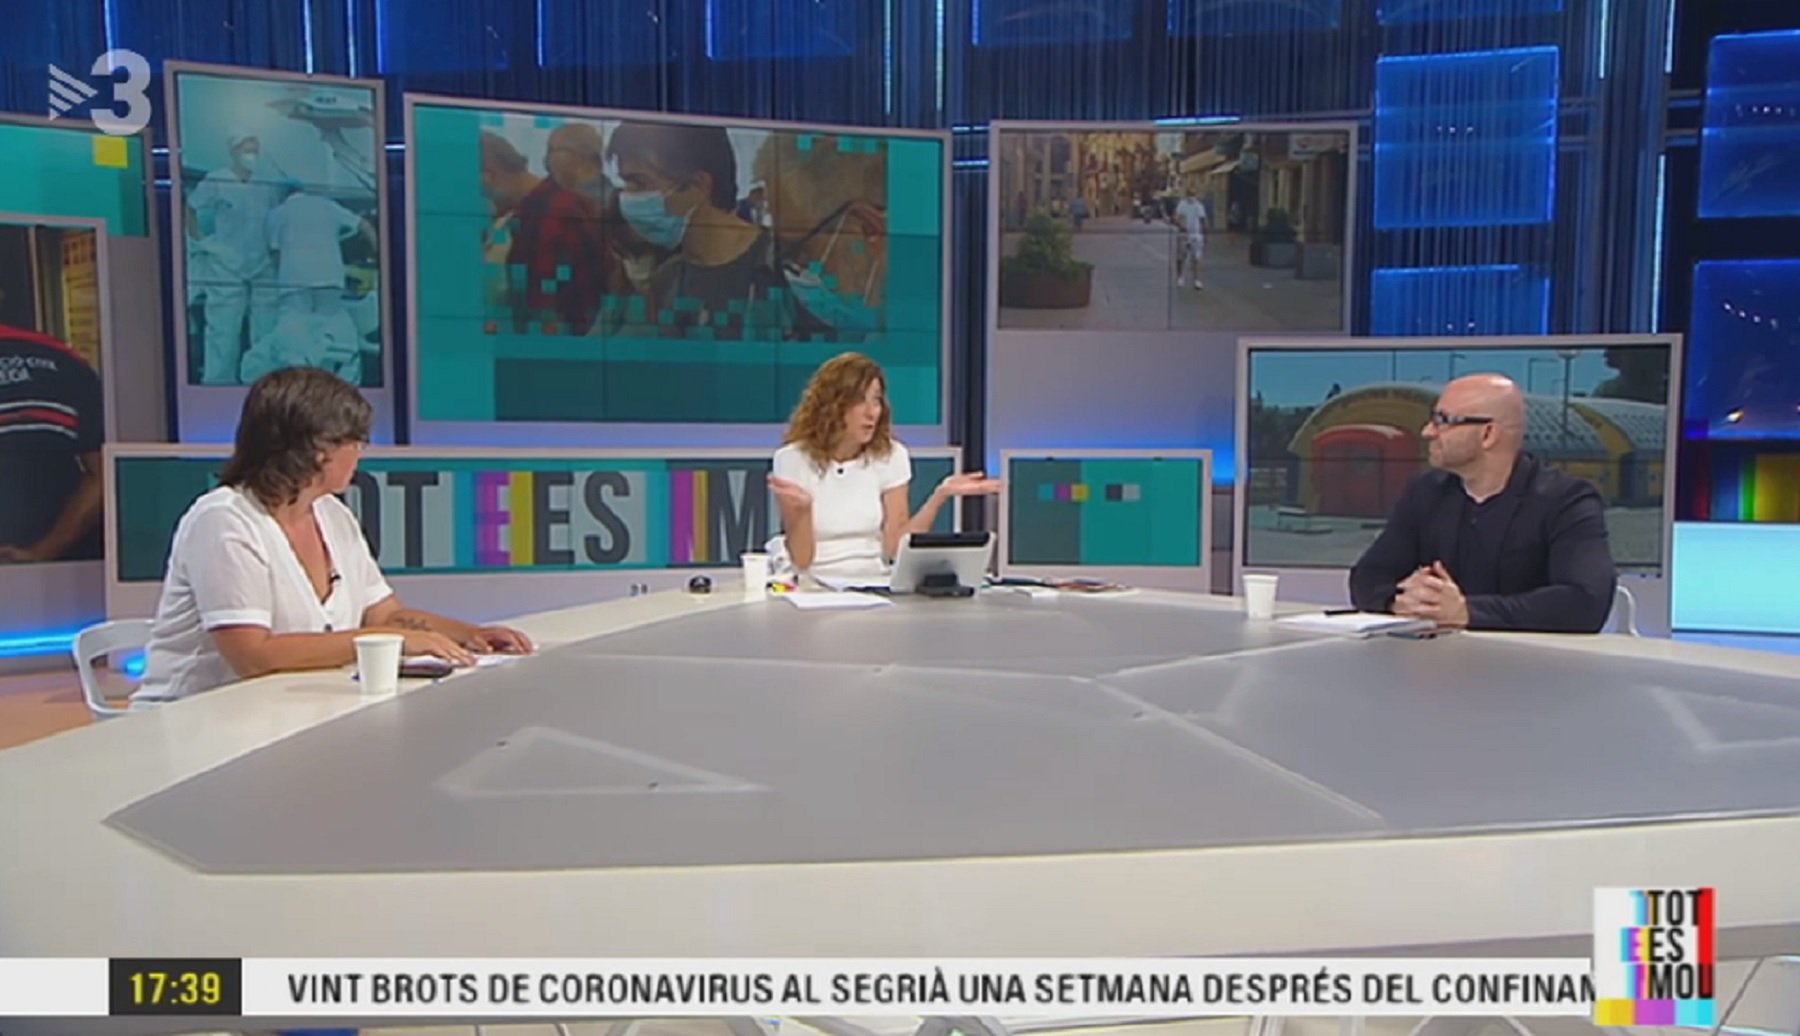 El catalán escrito de TV3 cargado de faltas que indigna a los espectadores